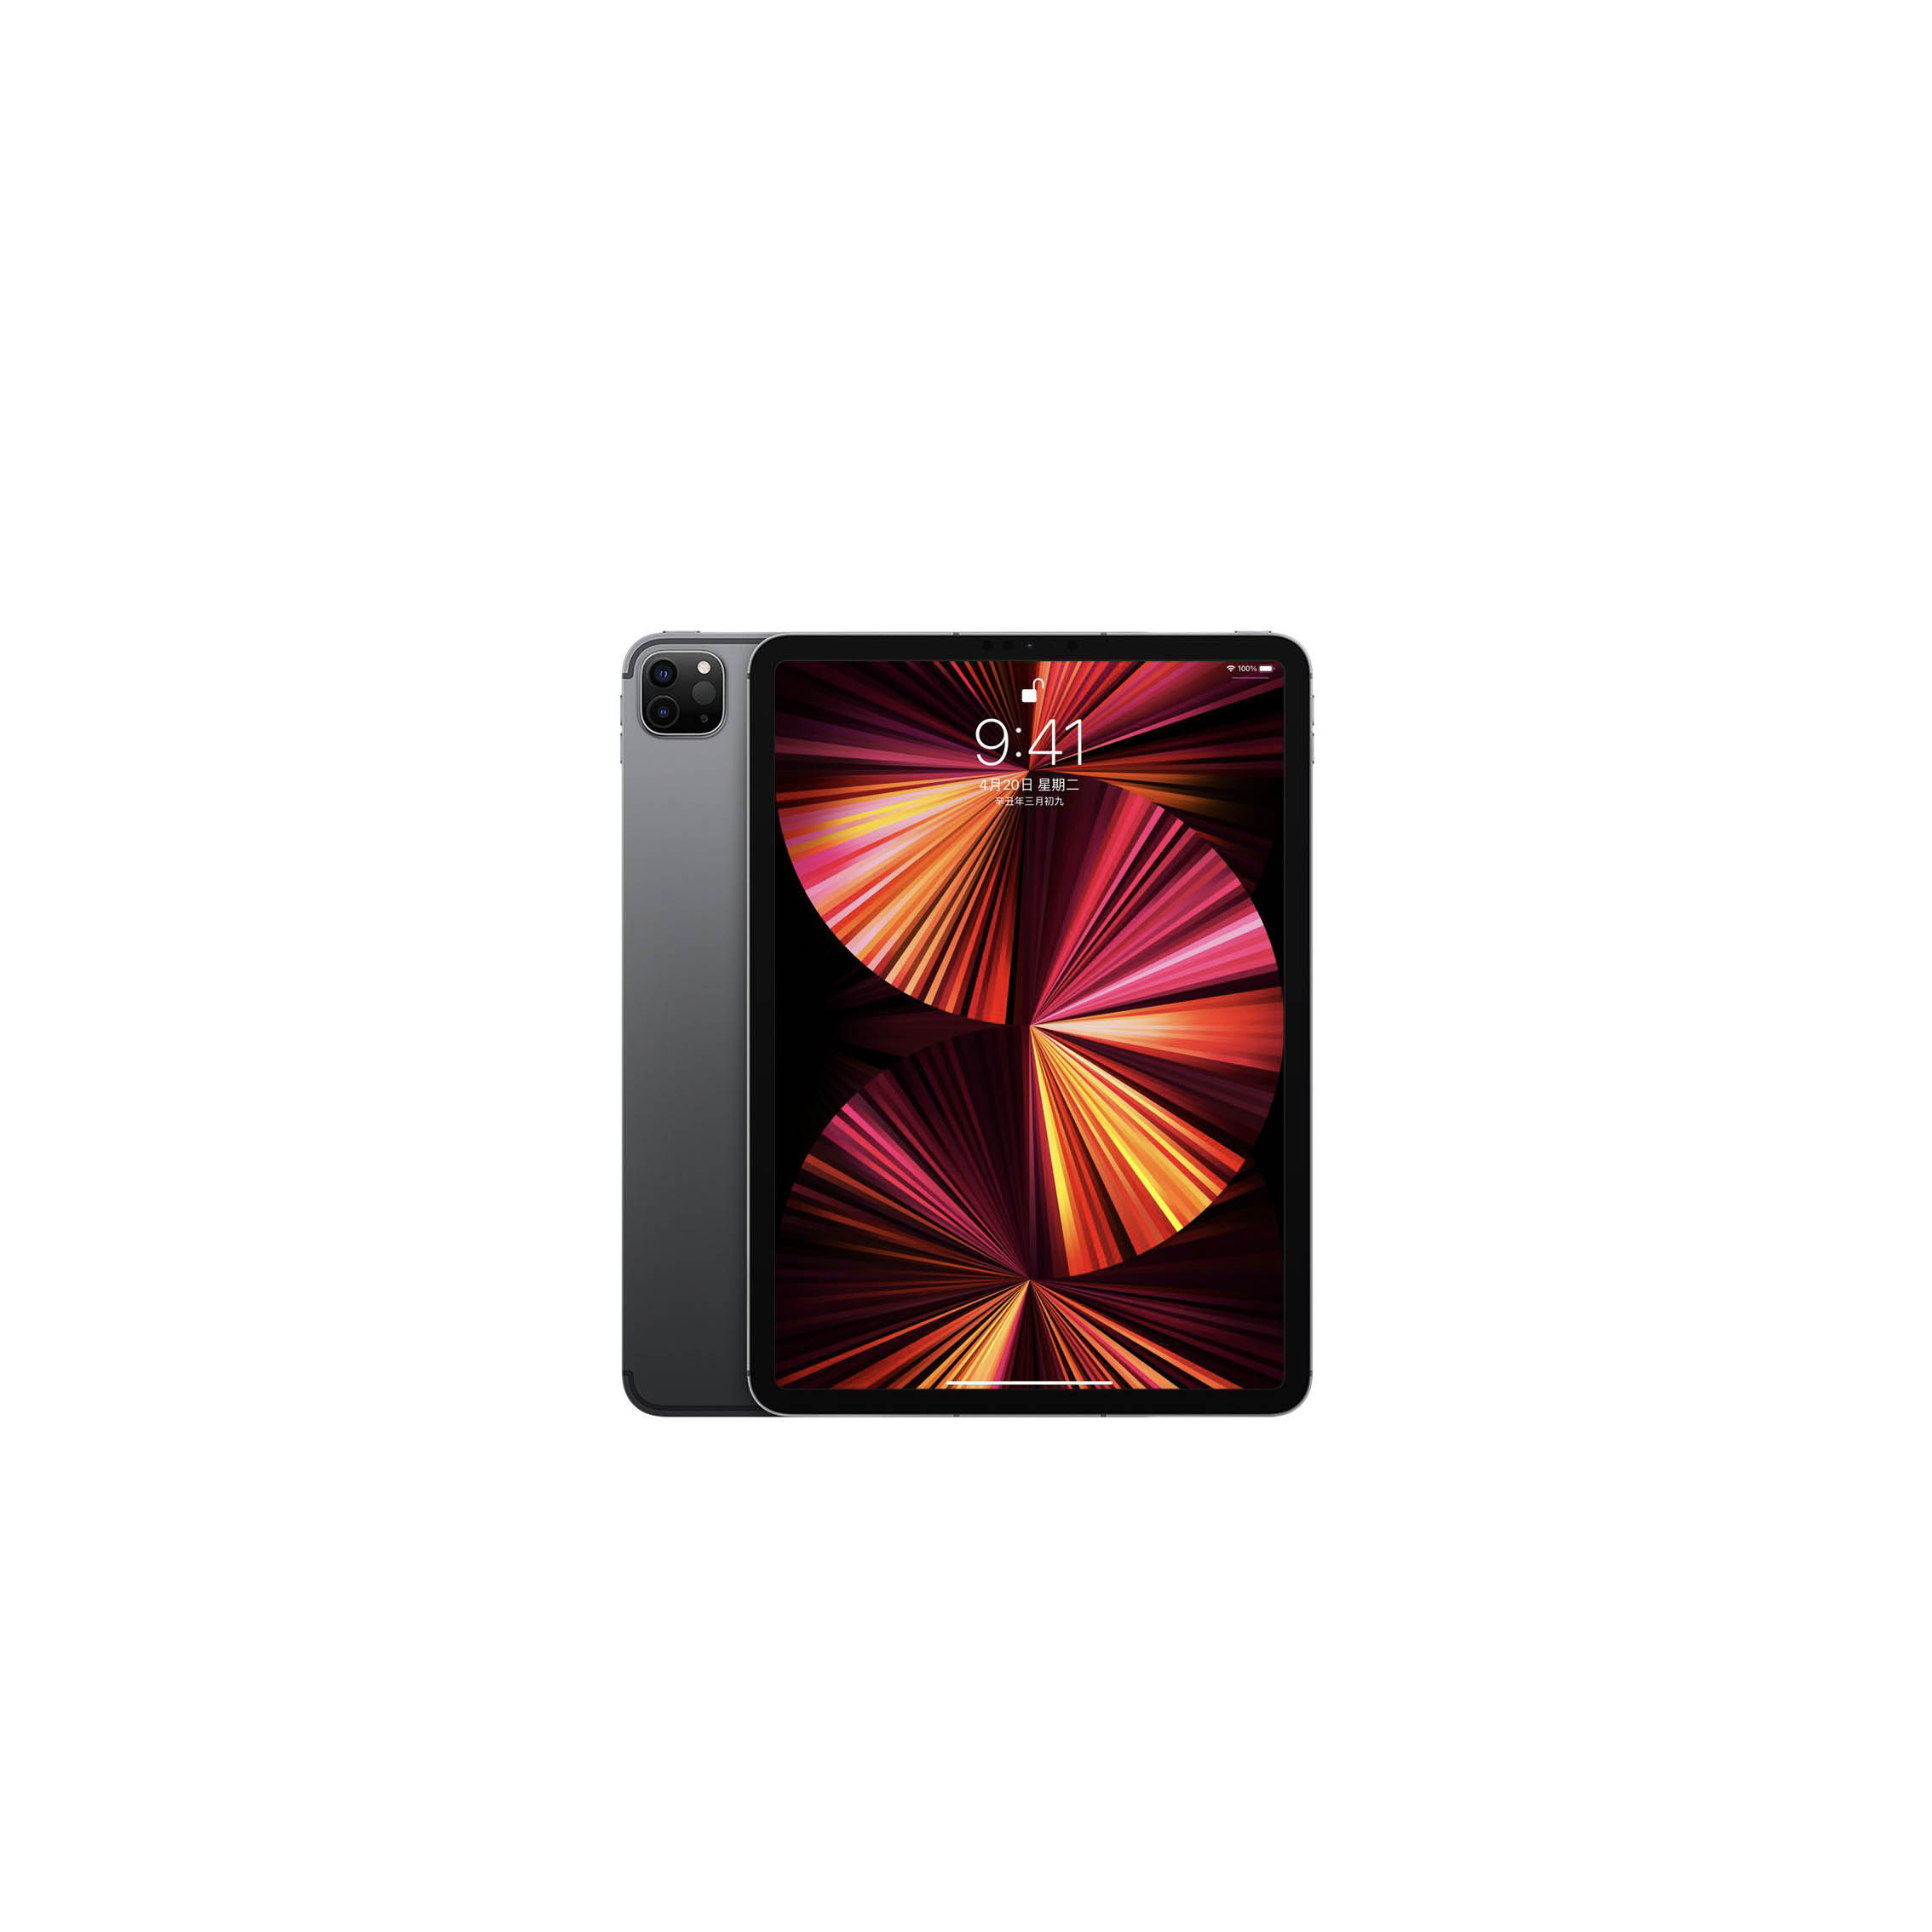 2021新款 iPad Pro 11吋 256G (行動網路版) 免卡分期